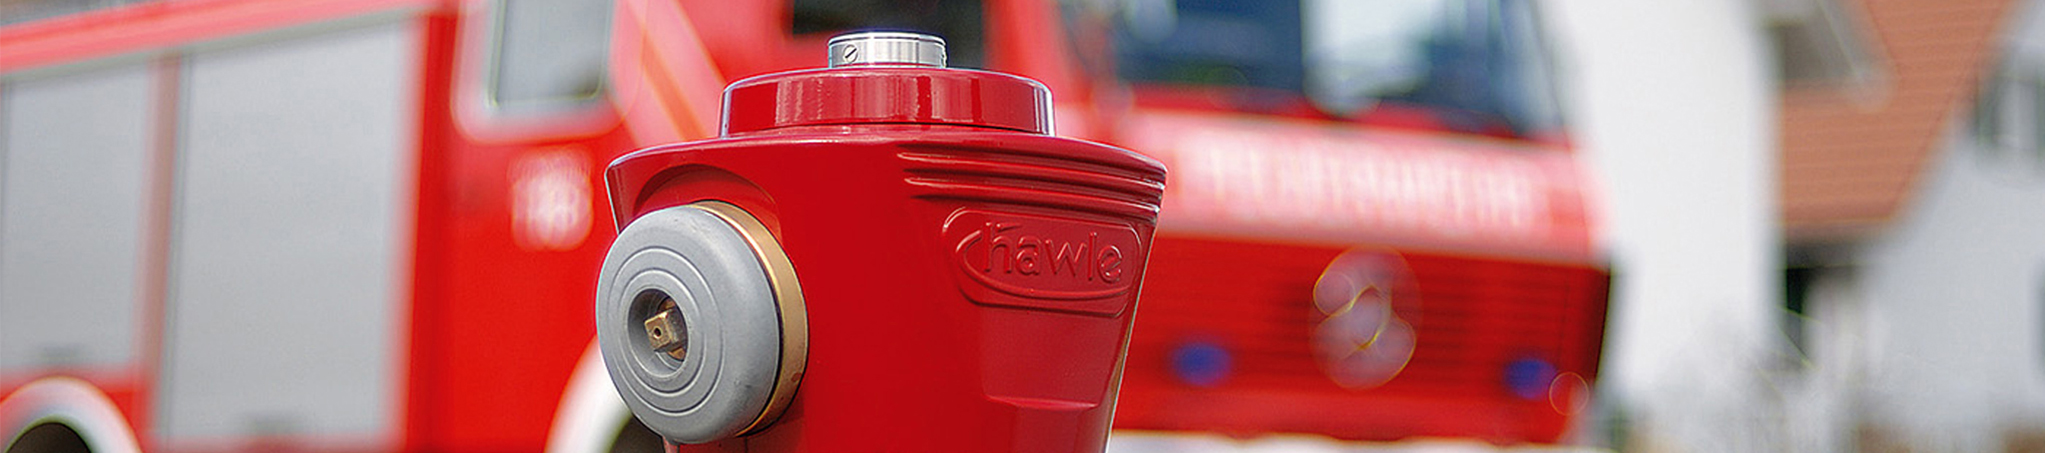 Schnittaufnahme eines roten Hydranten-Kopfes von Hawle als Themenbild für Header der Website